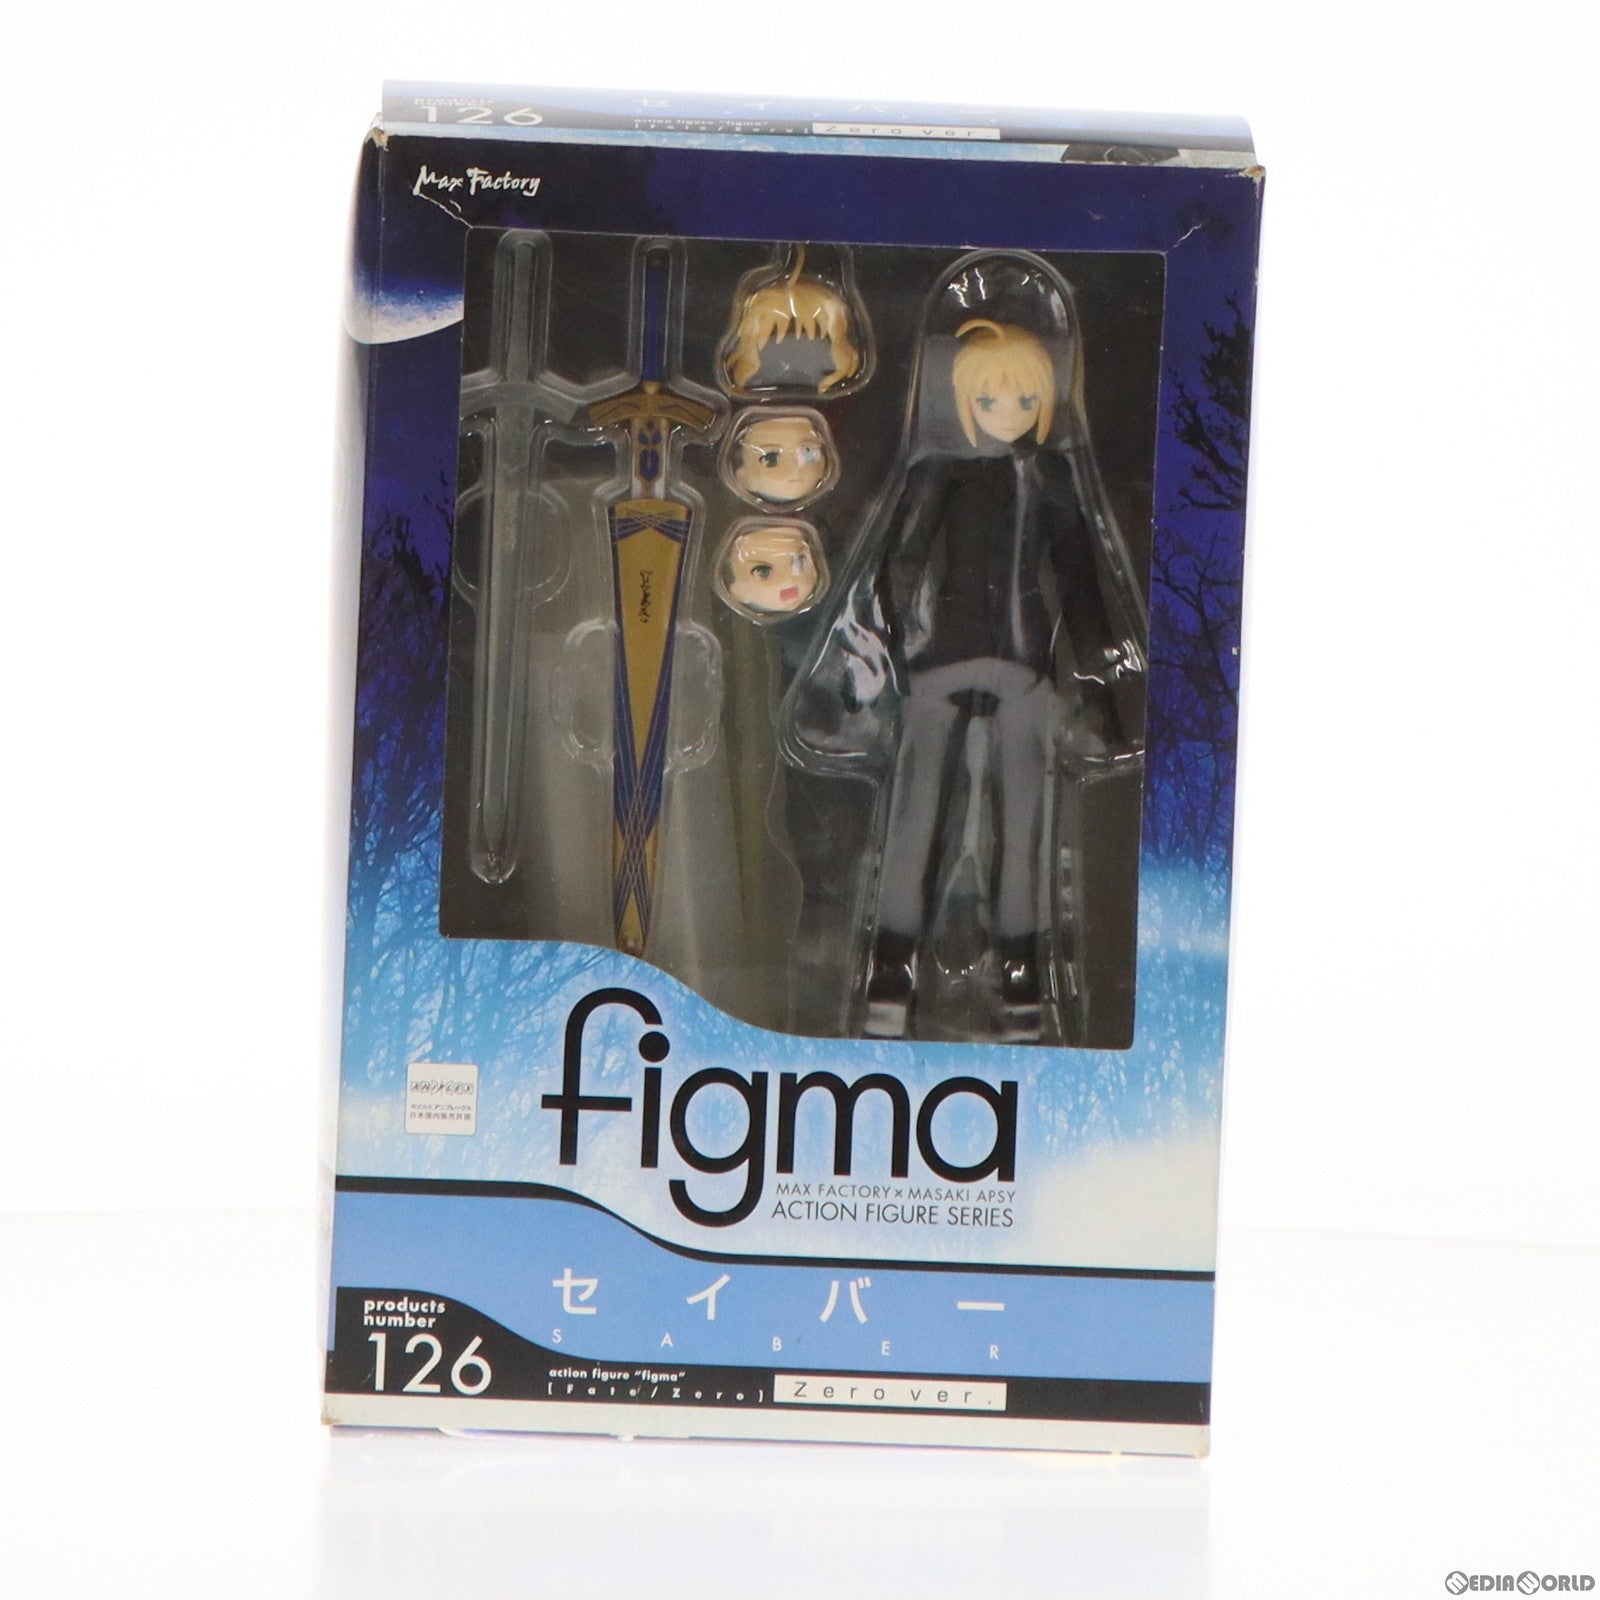 【中古即納】[FIG]figma(フィグマ) 126 セイバー Zero ver. Fate/Zero(フェイト/ゼロ) 完成品 可動フィギュア マックスファクトリー(20121024)